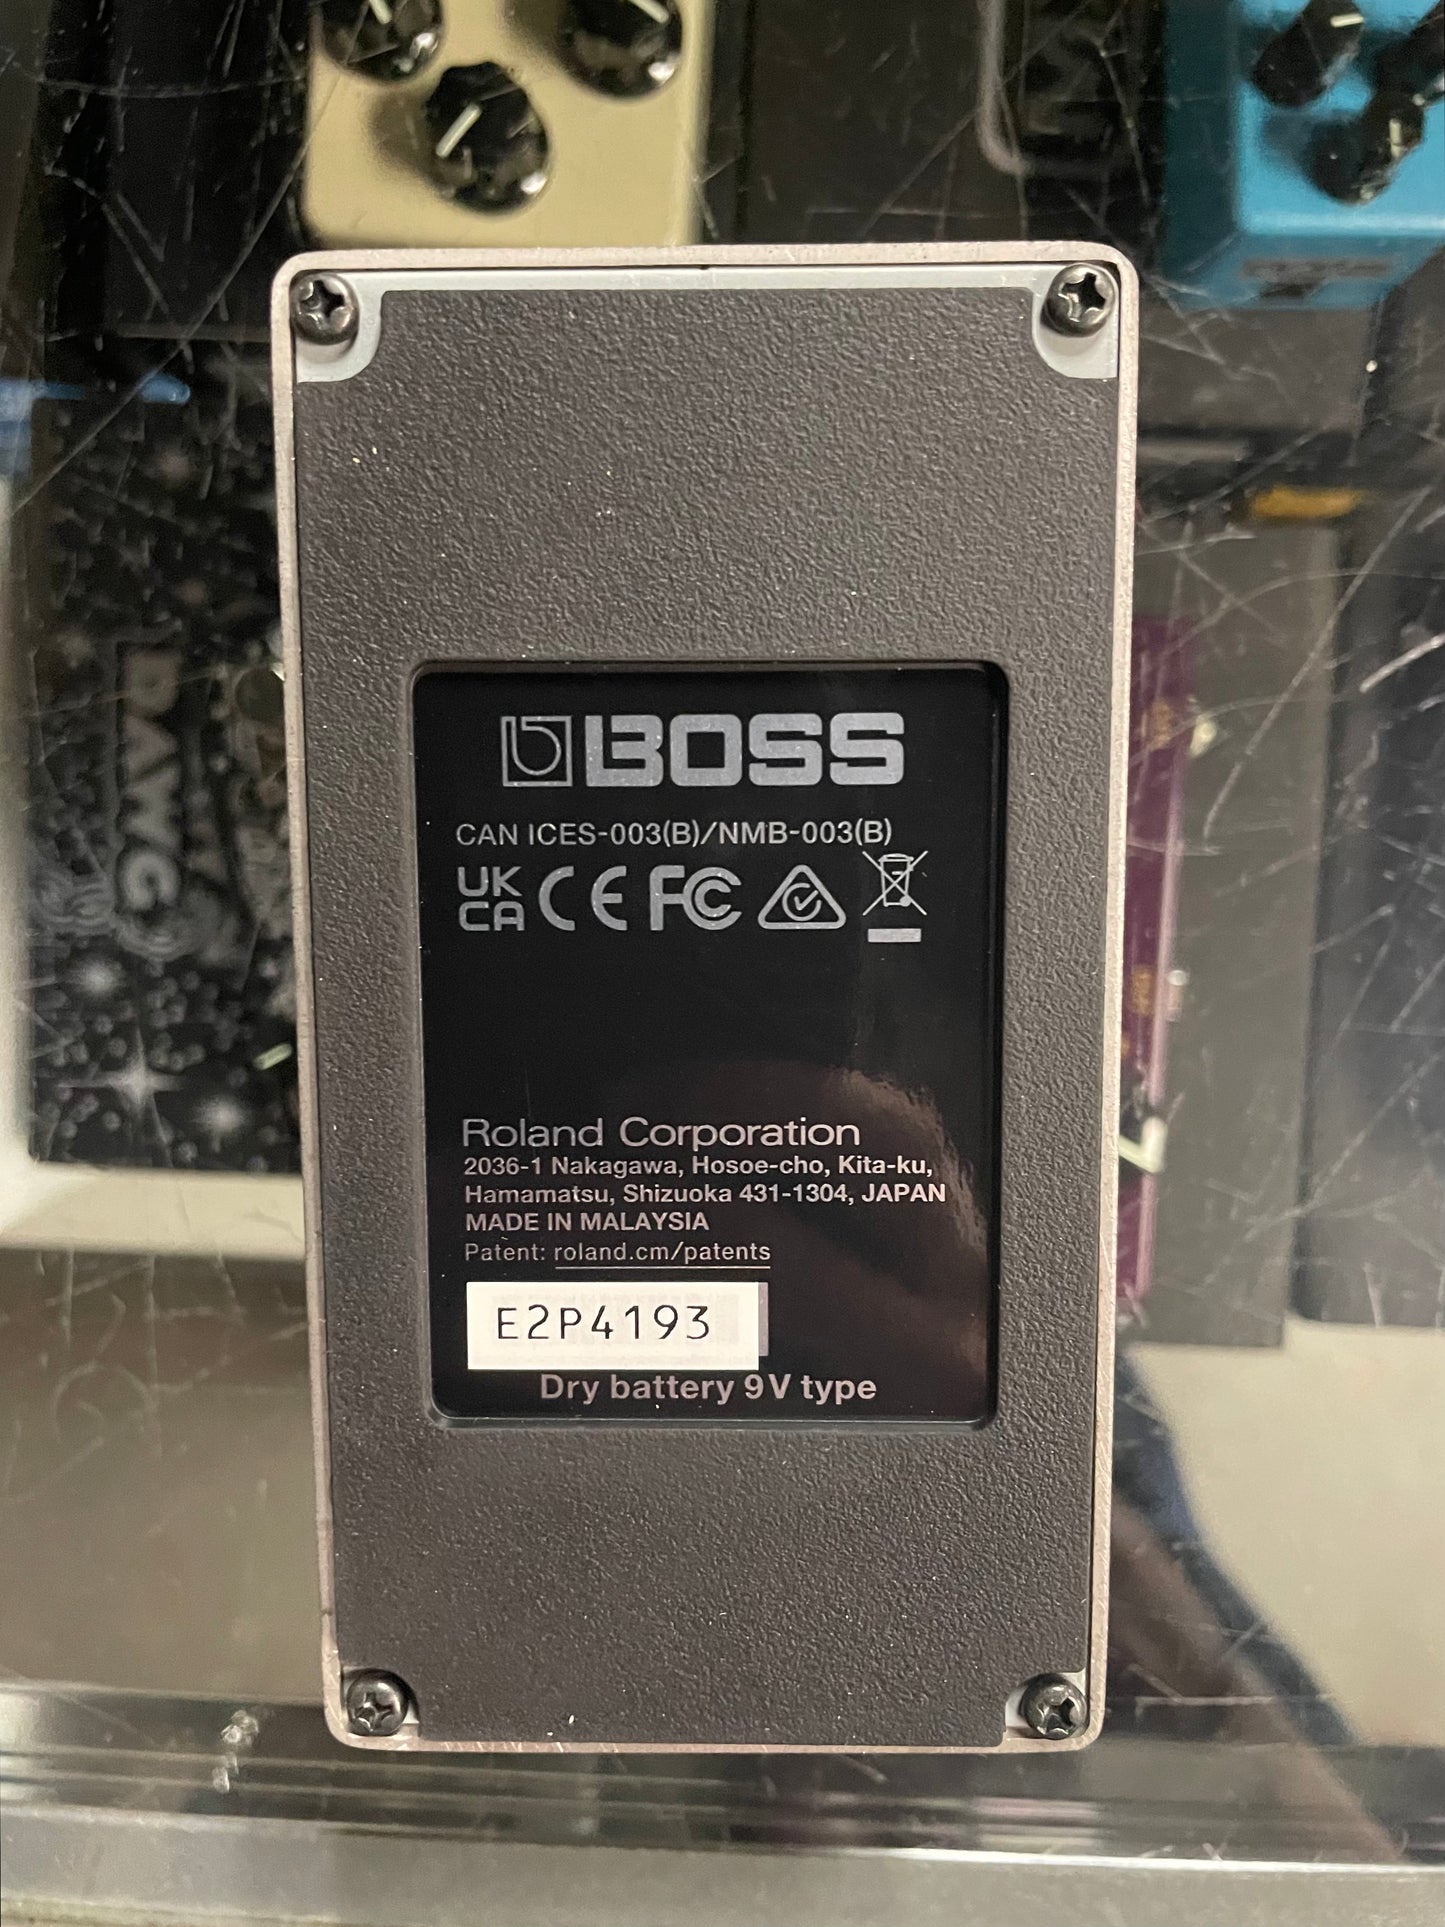 Boss RV-6 Digital Reverb Pedal